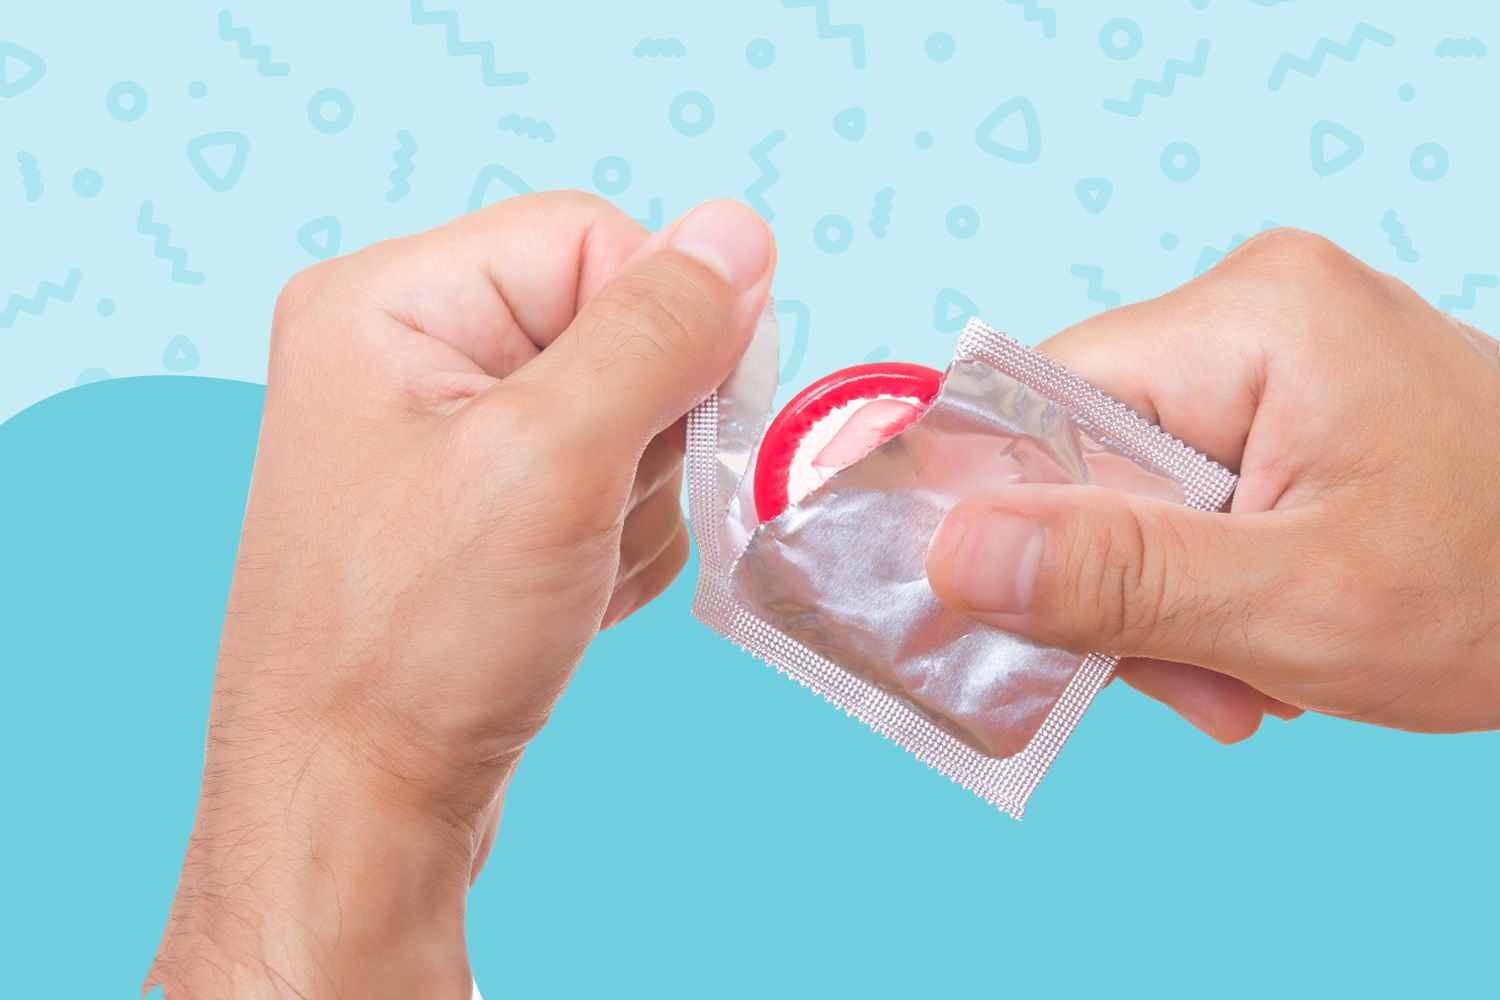 geciktiricili prezervatif nedir